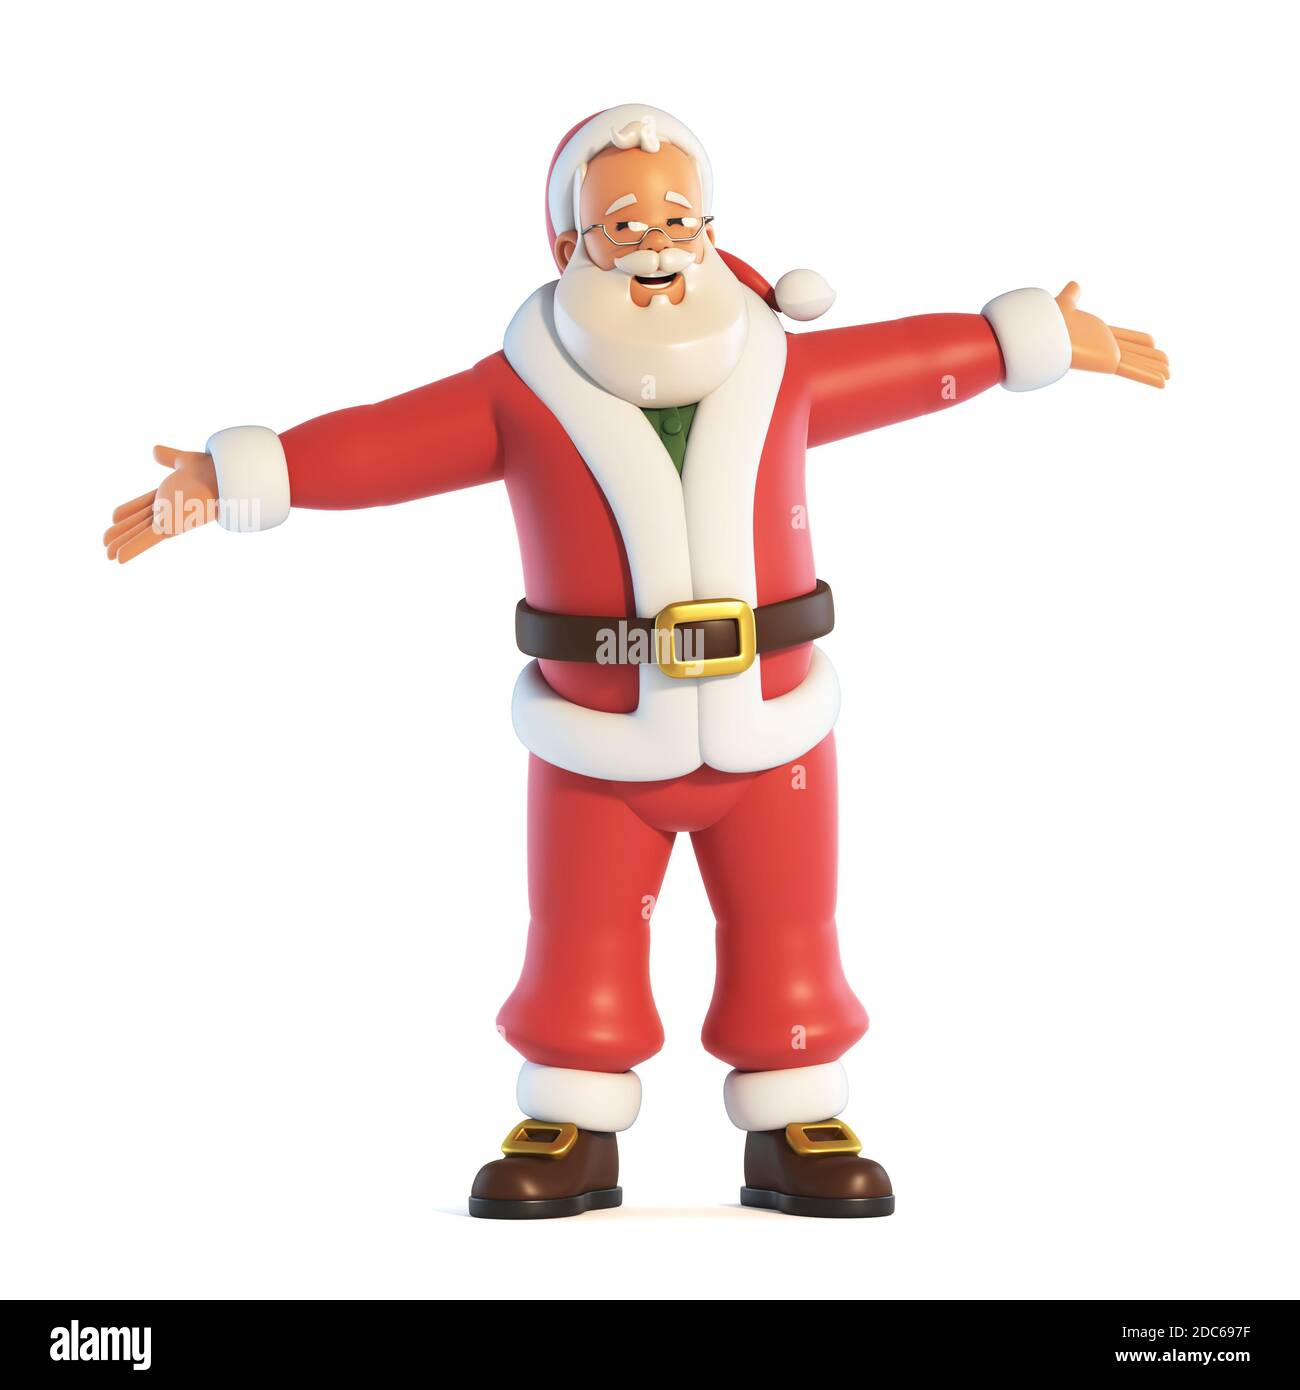 Hãy chiêm ngưỡng ông già Noel 3D cực kỳ đáng yêu và sinh động, đem lại mùa Giáng Sinh ấm áp và niềm vui bất tận cho những người yêu thích sự đáng yêu.